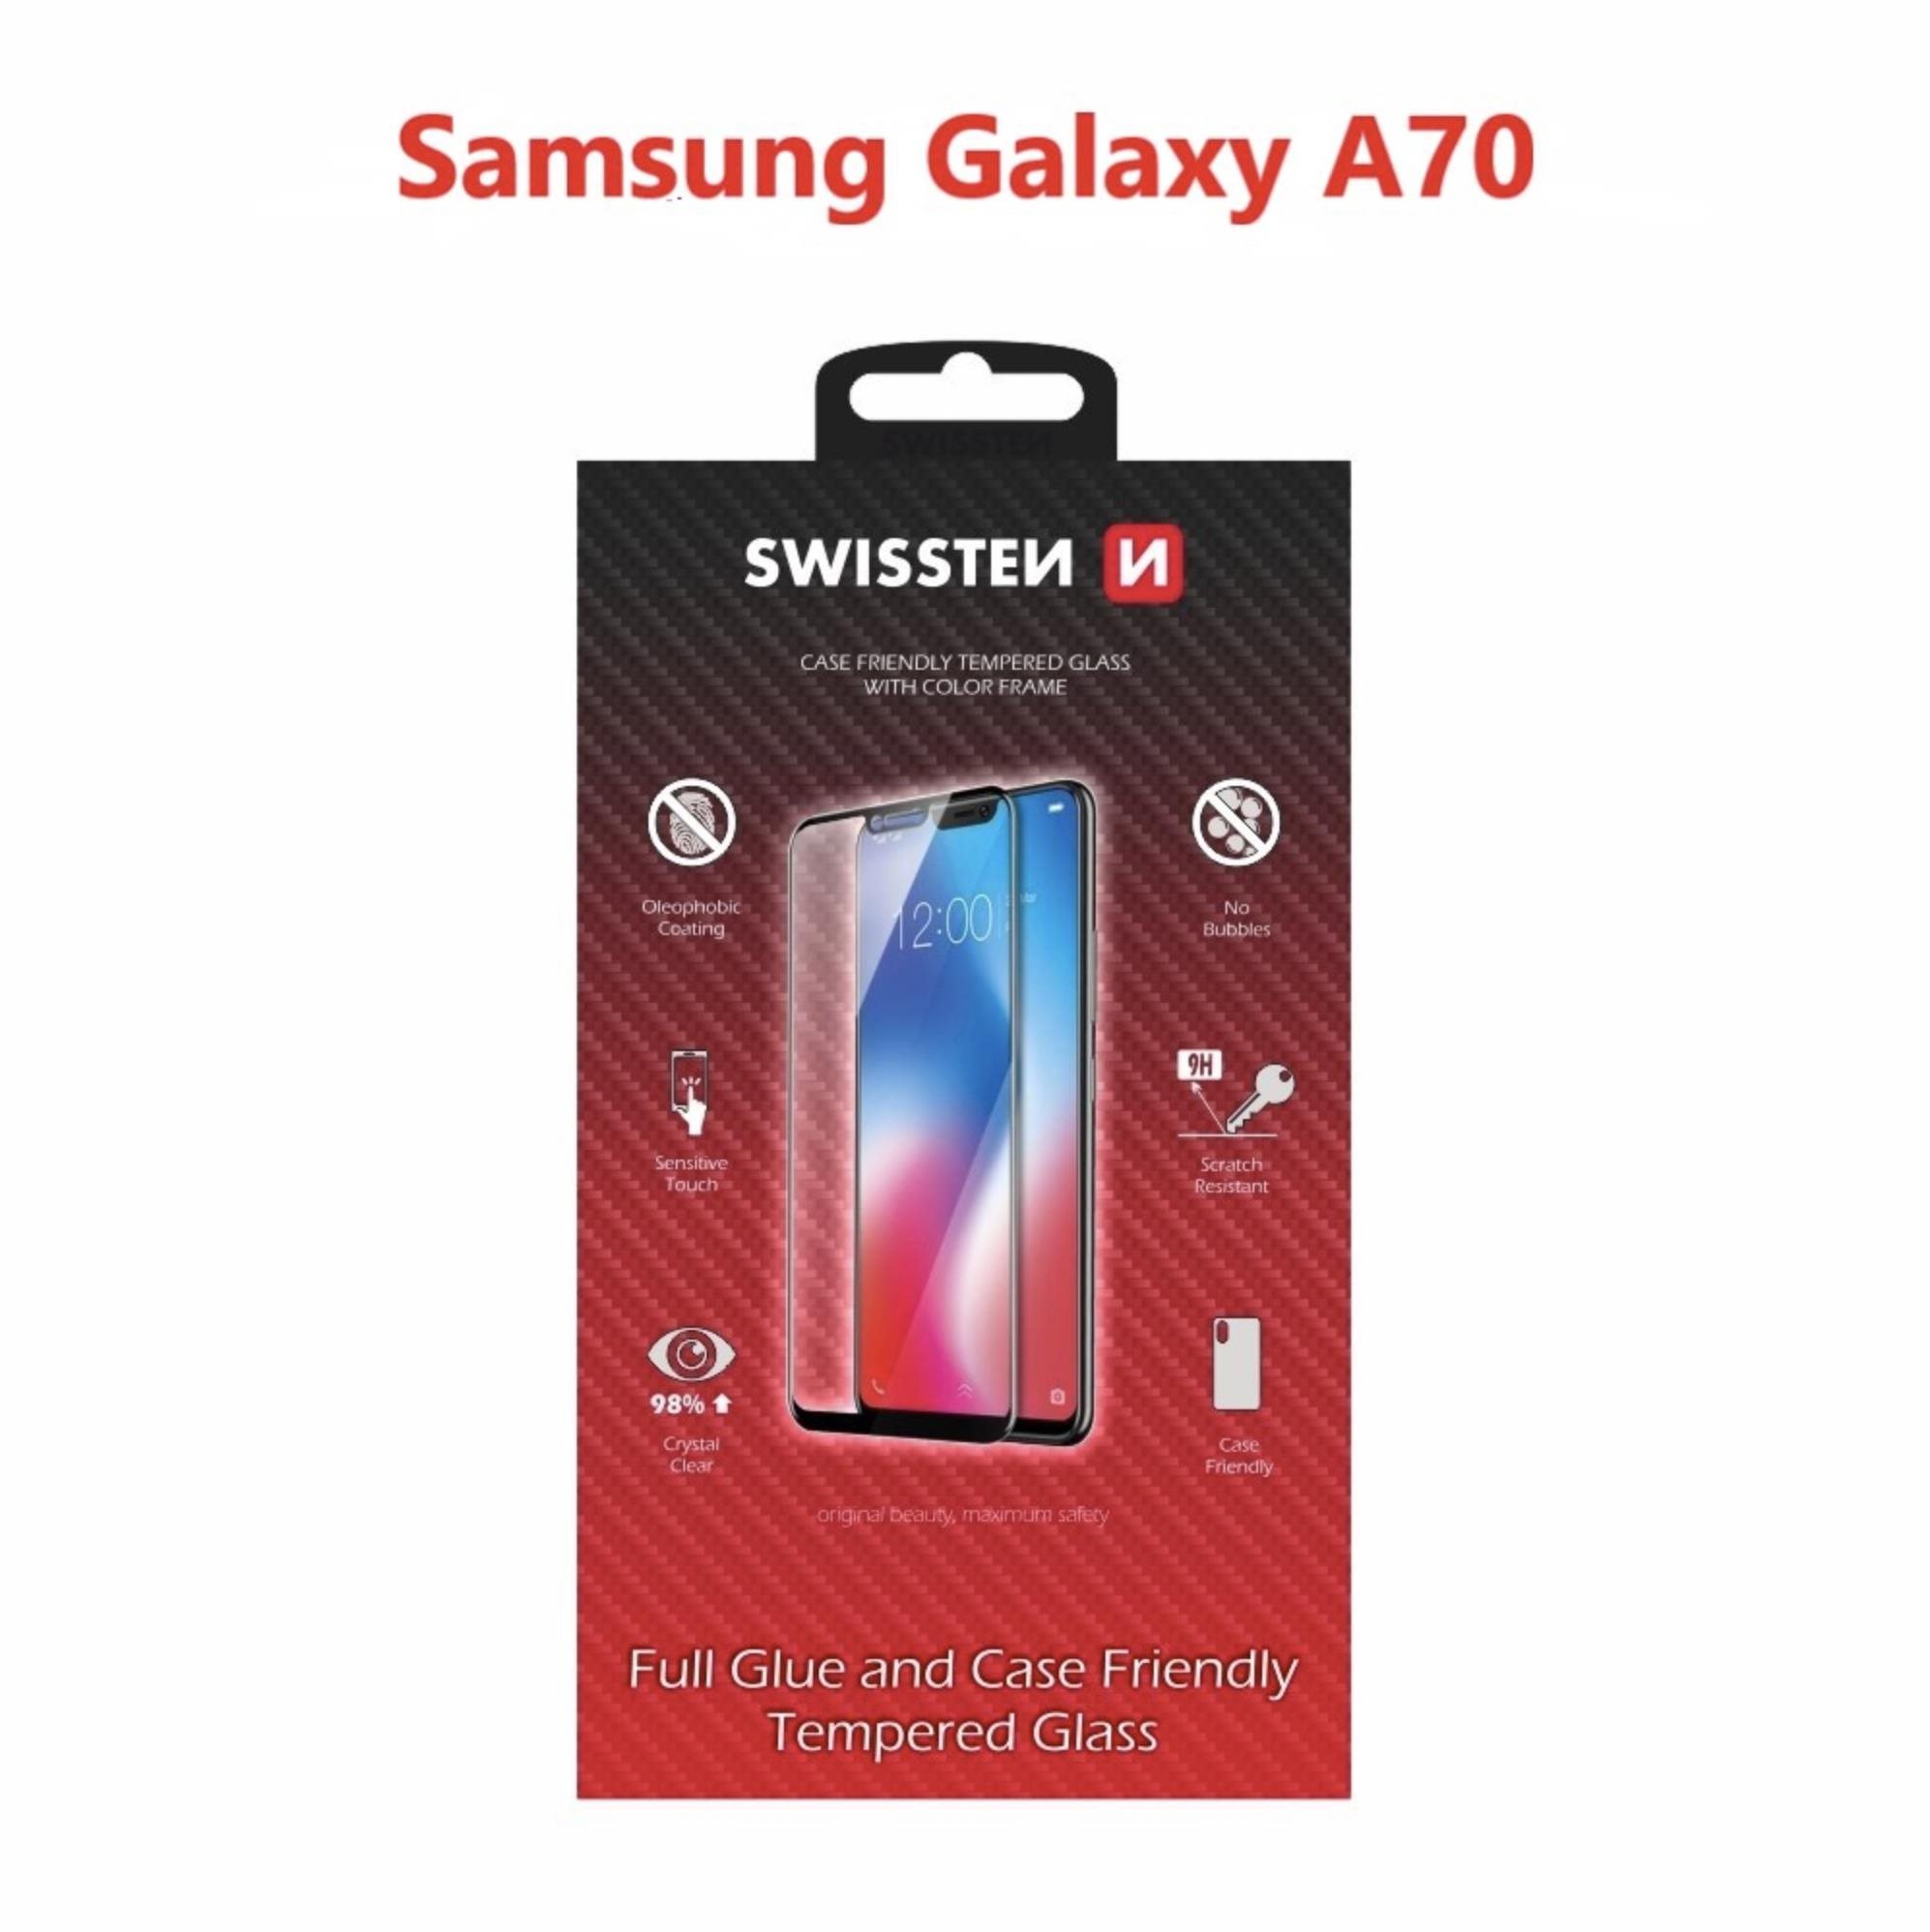 Üvegfólia Swissten Case Friendly a Samsung Galaxy A70 készülékhez - fekete